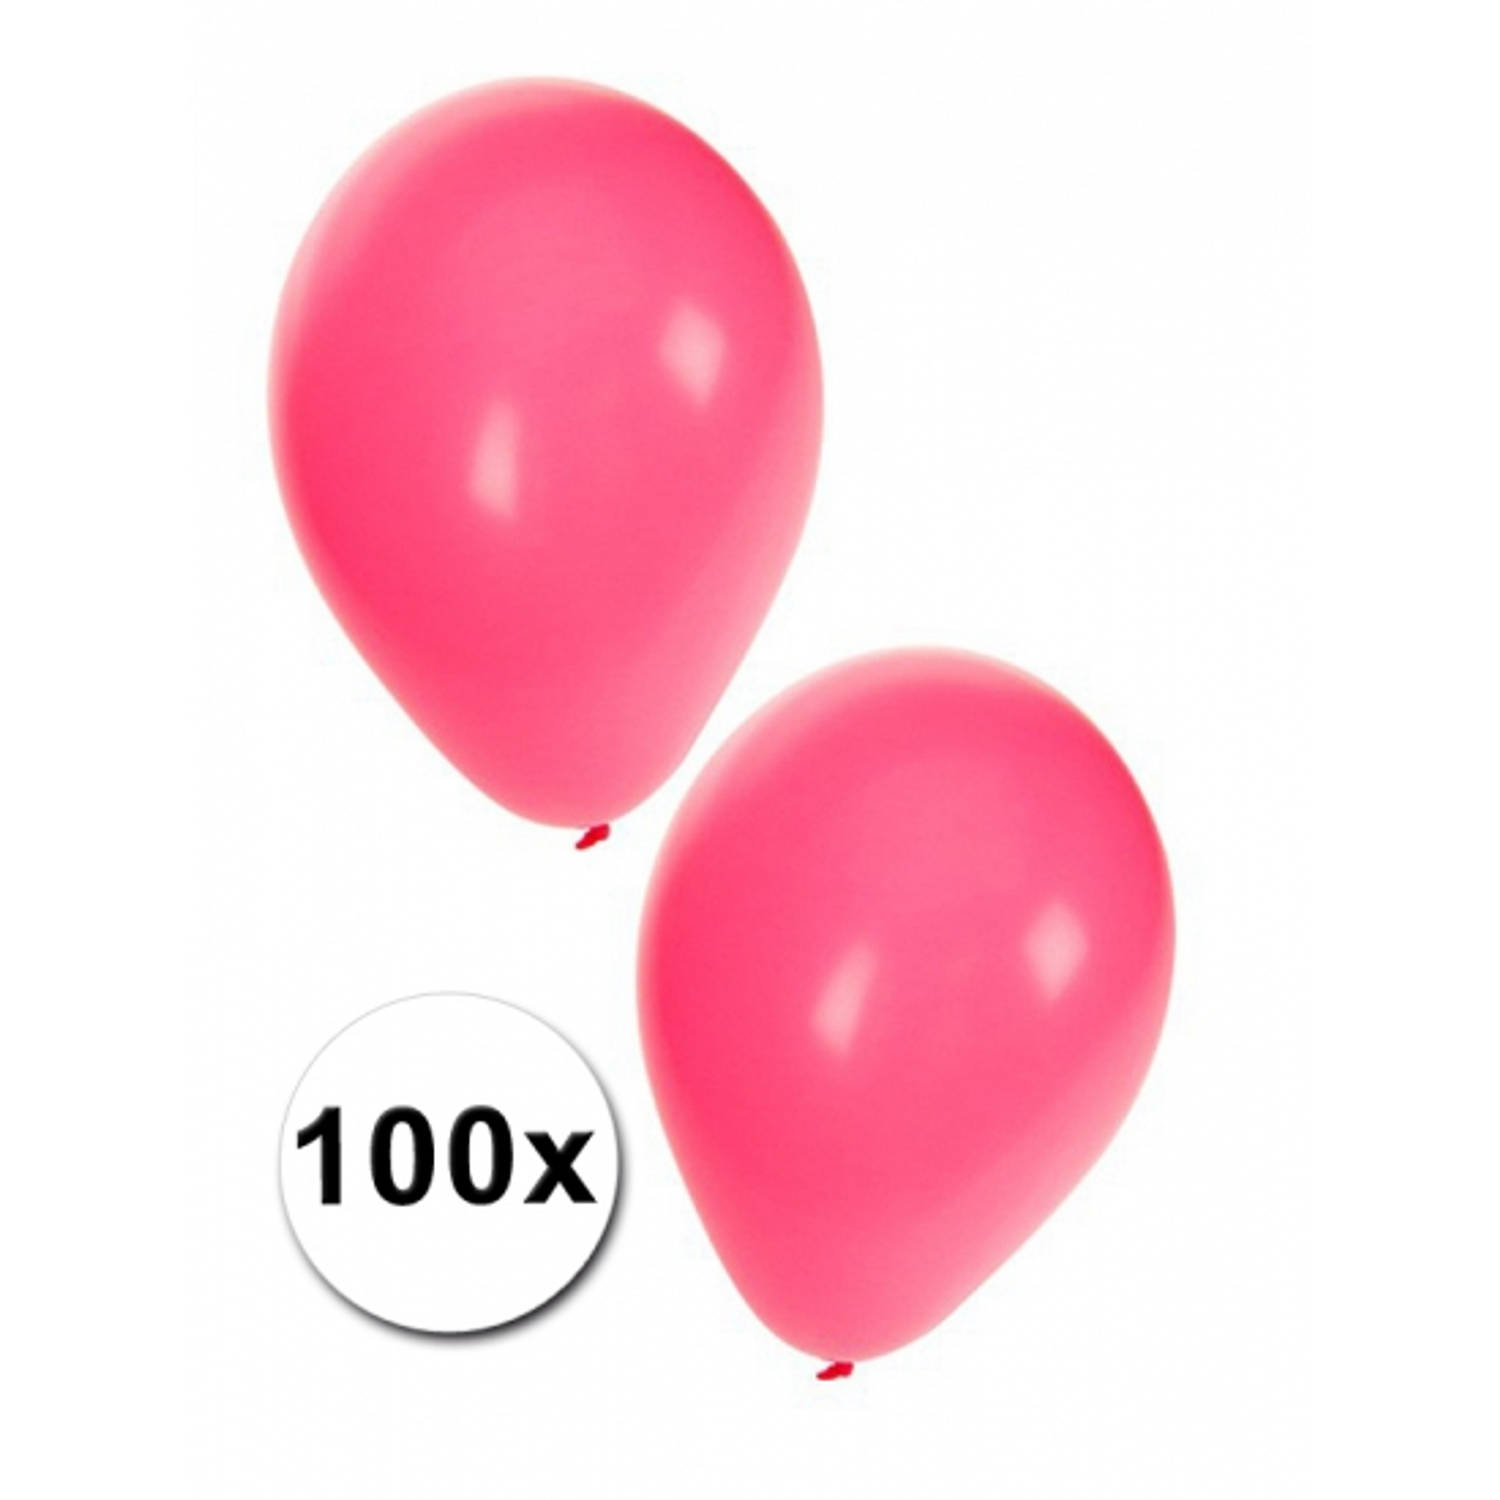 communicatie geluid Stroomopwaarts Roze ballonnen 100 stuks - Ballonnen | Blokker